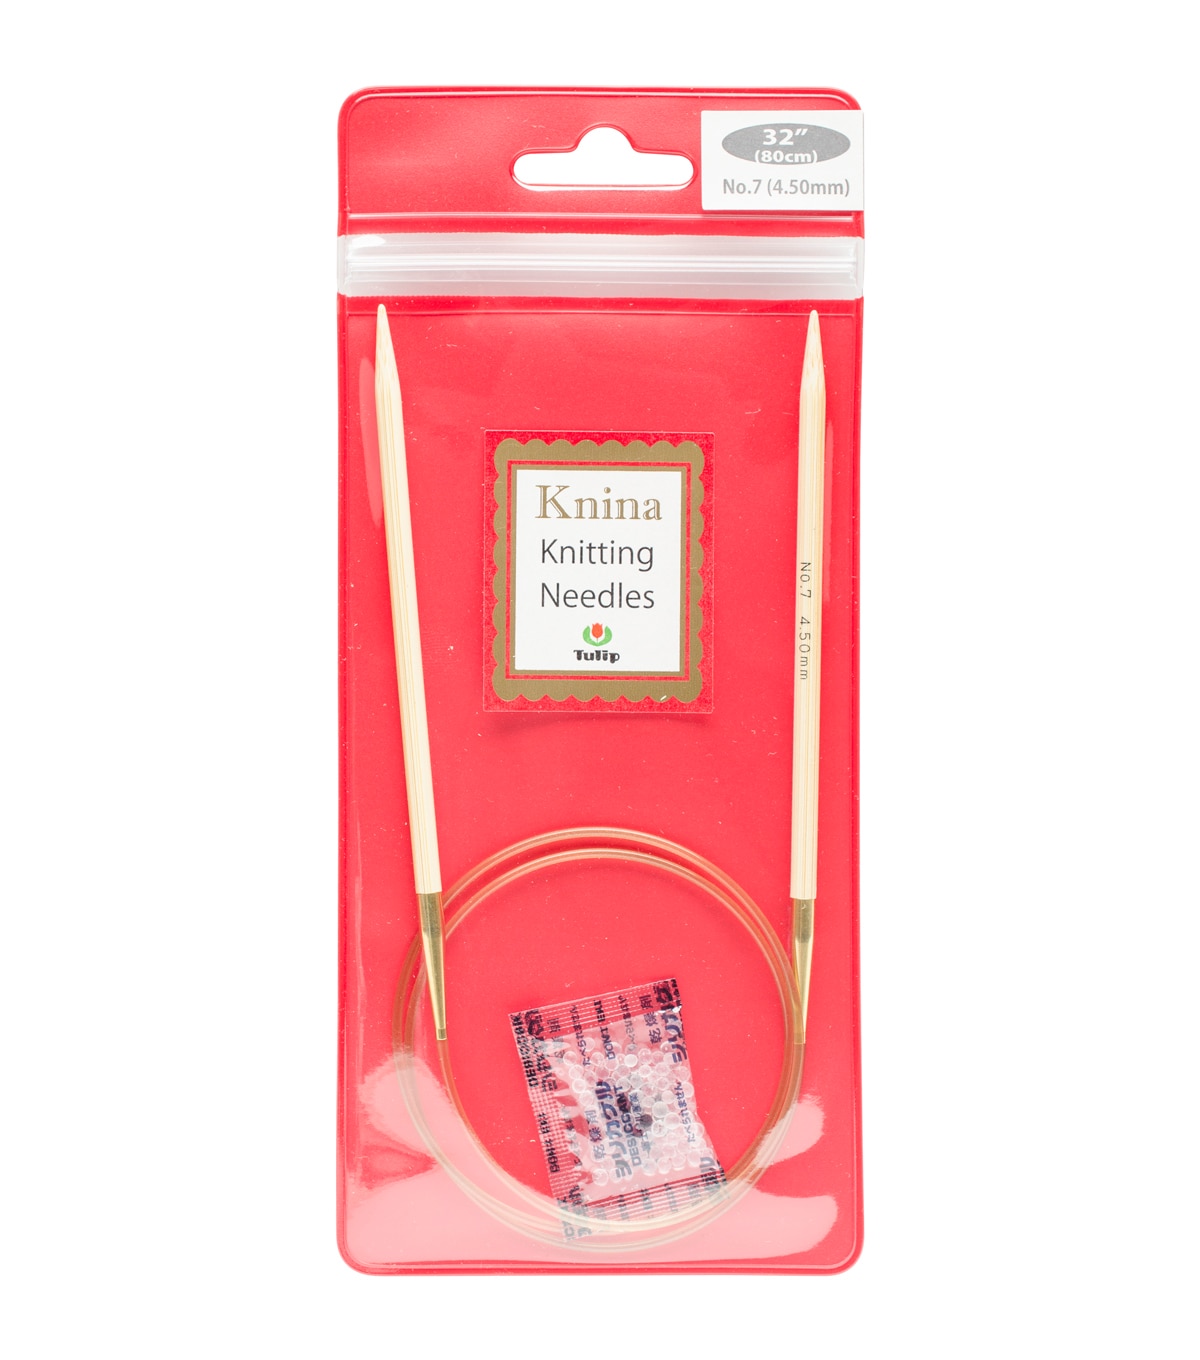 Tulip Needle Company Knina Knitting Needles 32'' Size 7 | JOANN